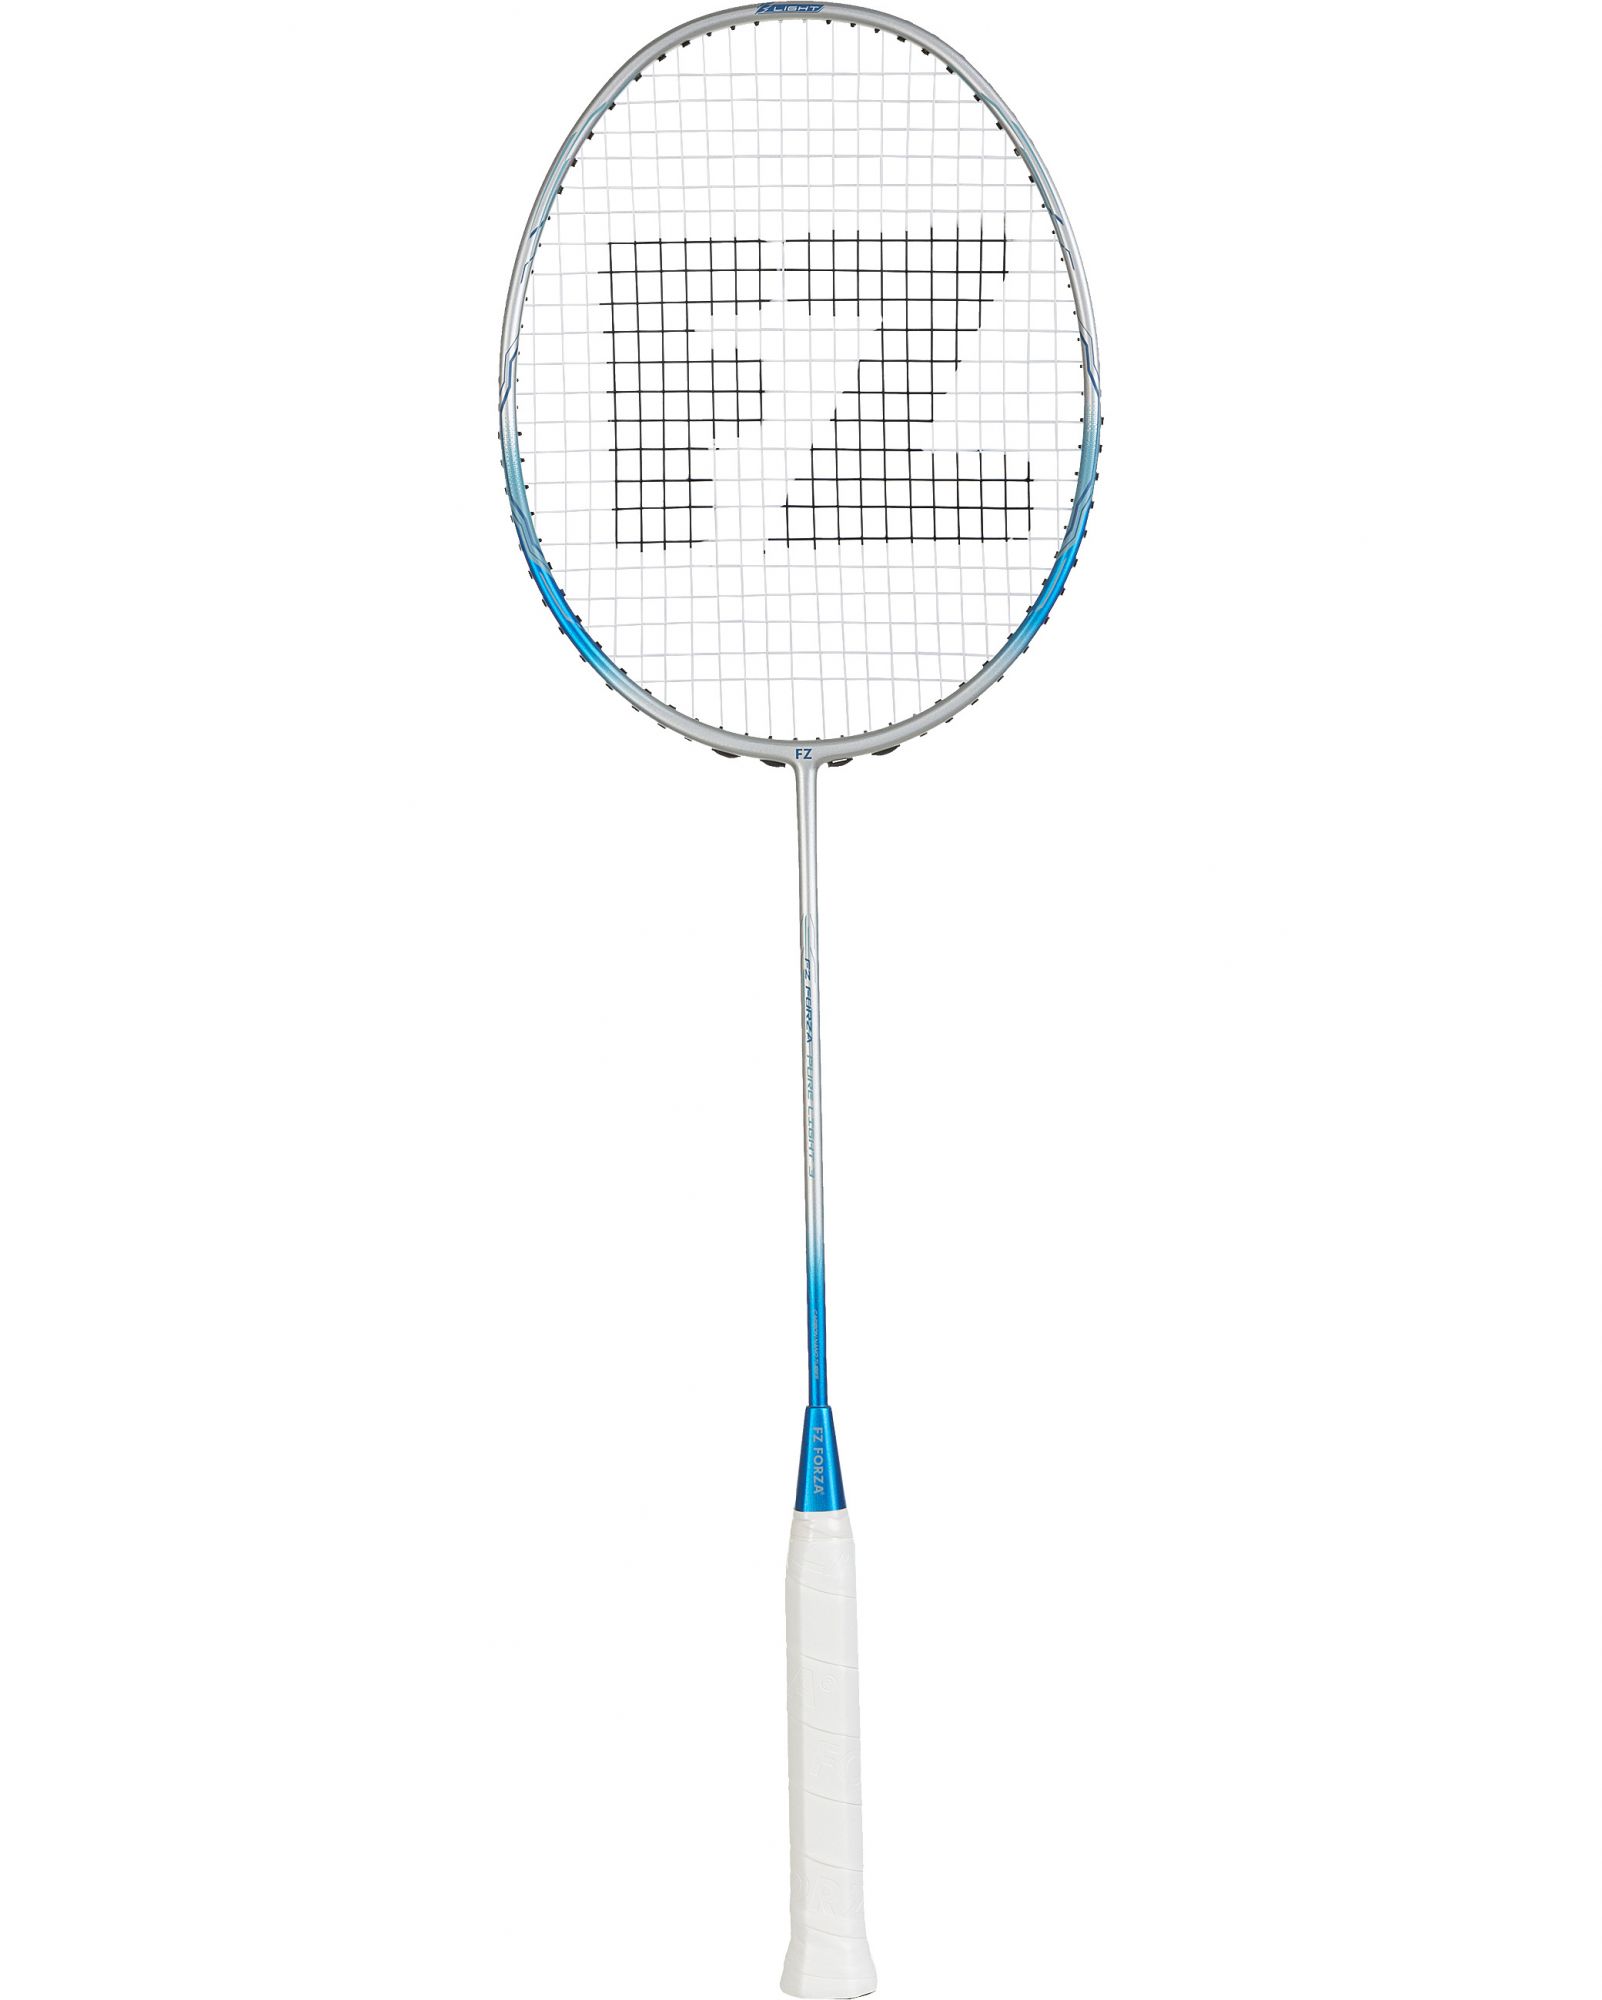 Tout savoir sur le grip et surgrip au badminton - Badminton Univers